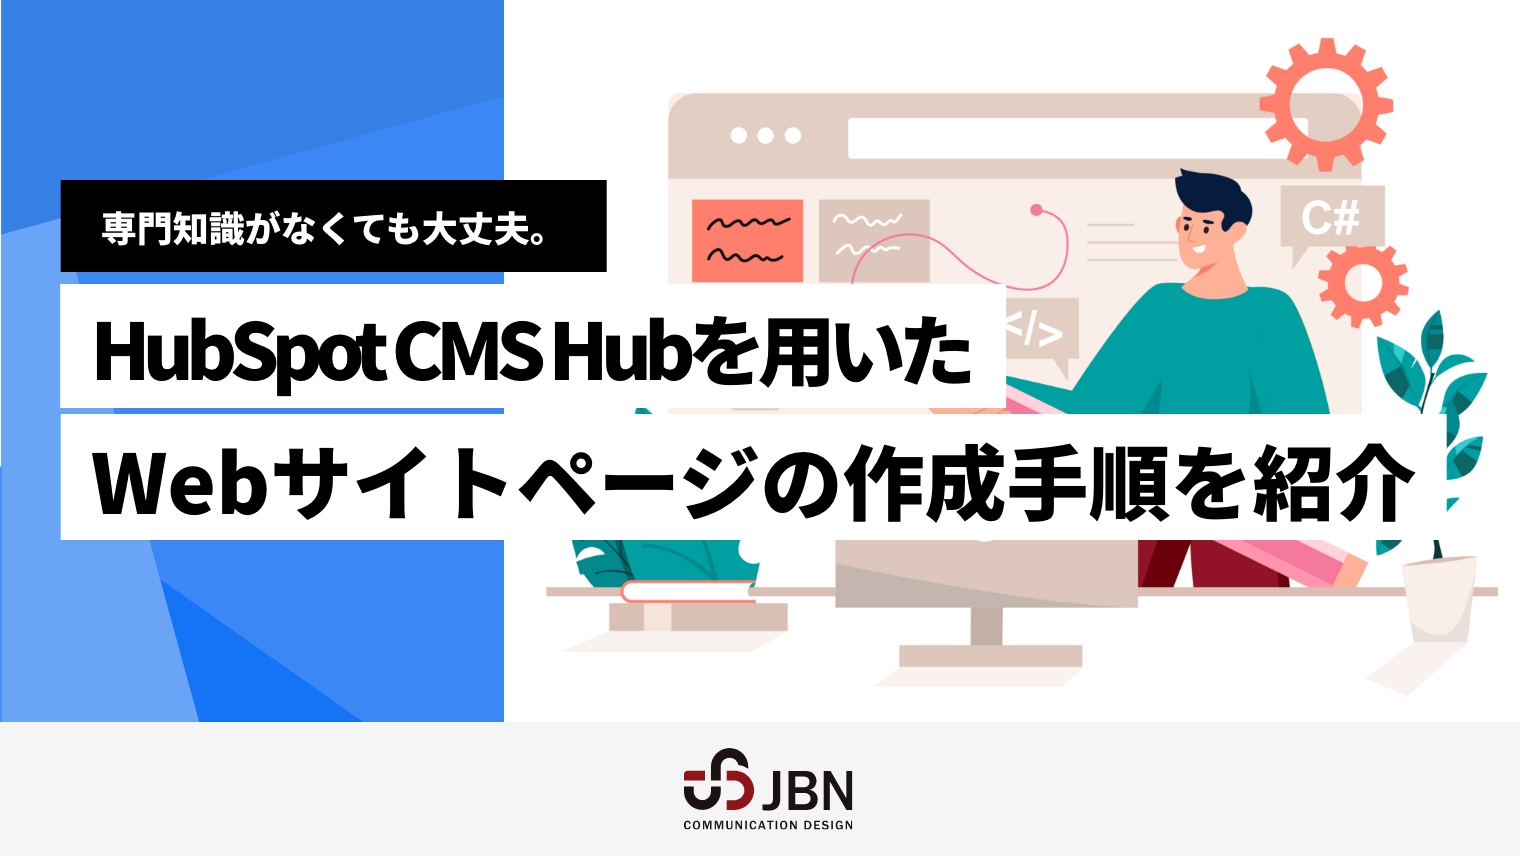 専門知識がなくても大丈夫。HubSpot CMS Hubを用いたWebサイトページの作成手順を紹介